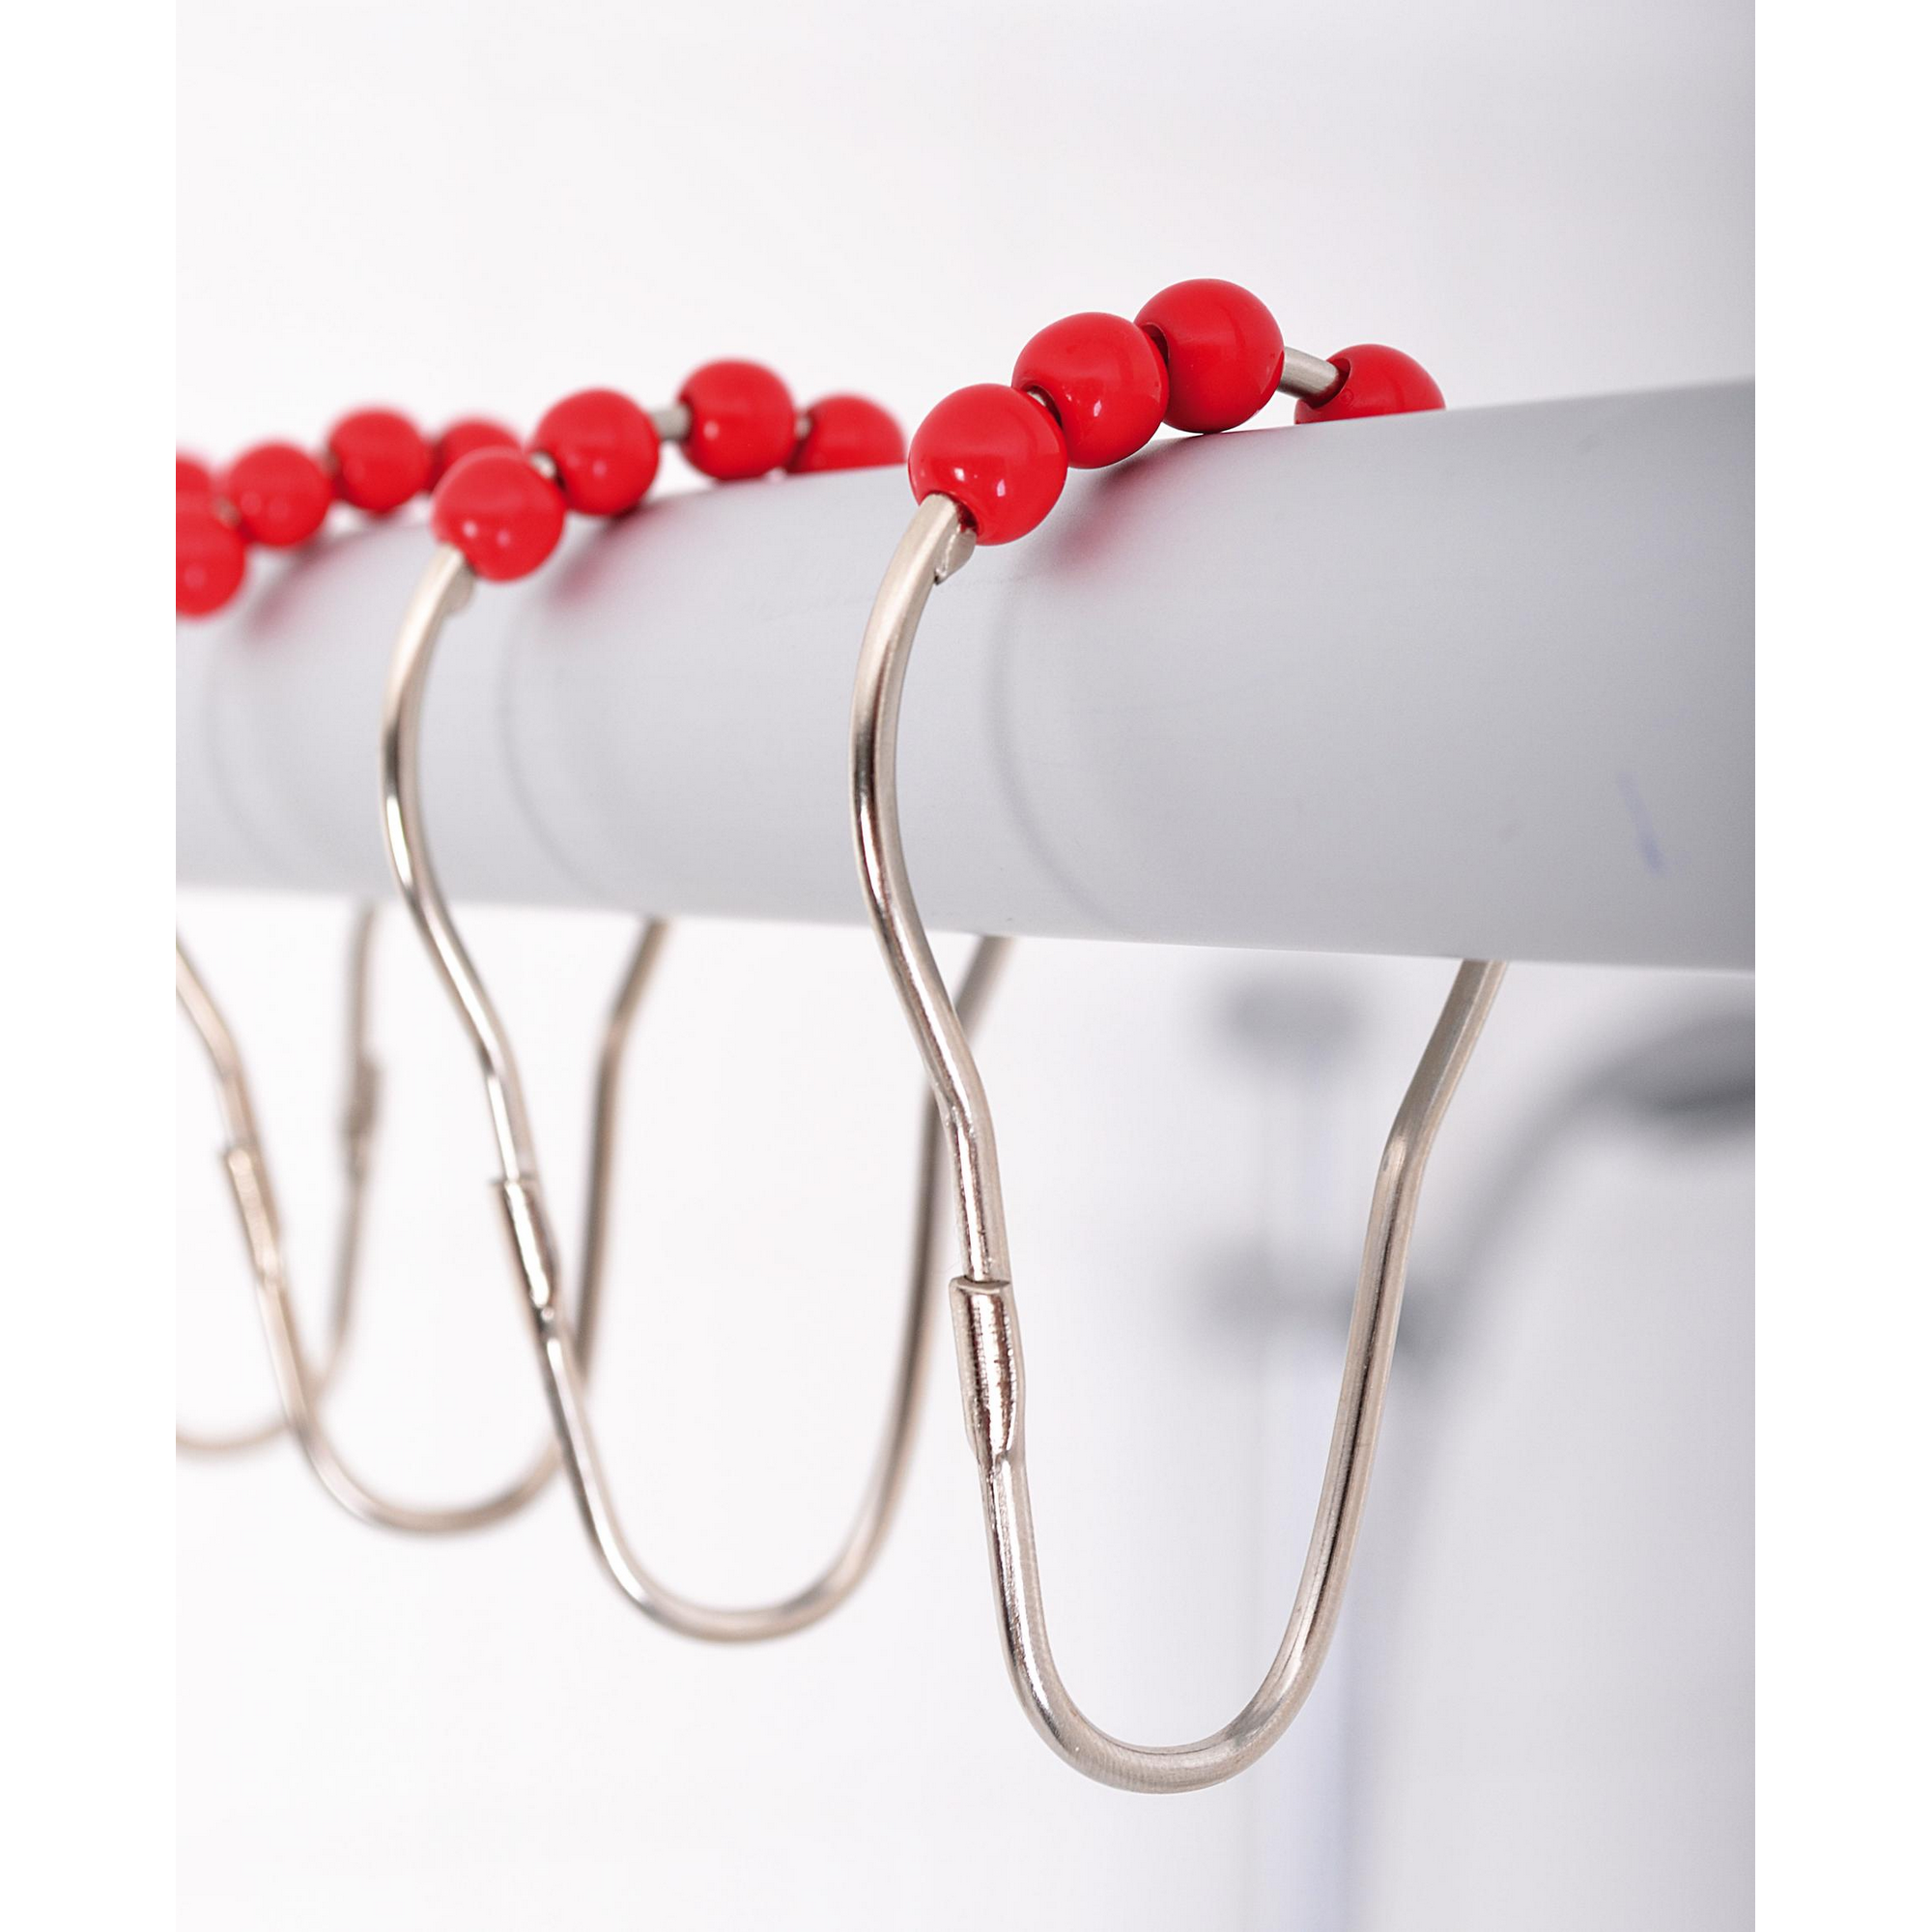 Duschvorhangringe 'Villach' mit roten Rollen, 12 Stück + product picture